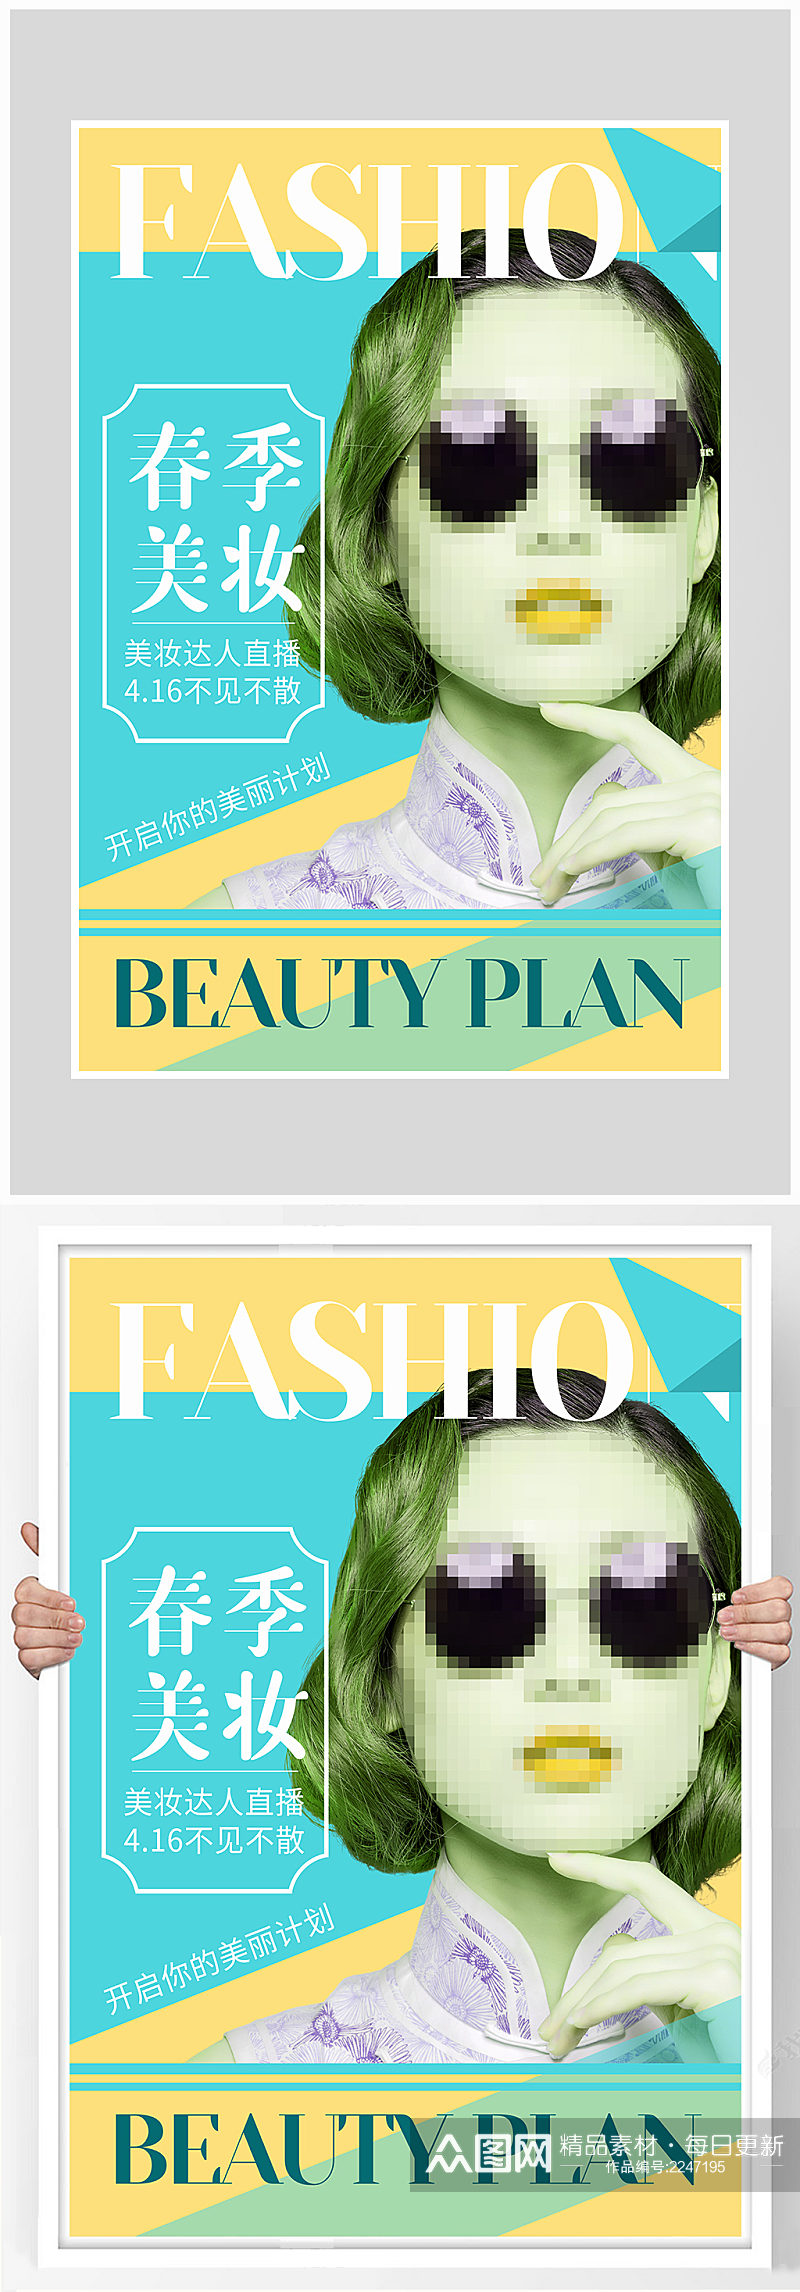 创意质感时尚杂志封面海报设计素材